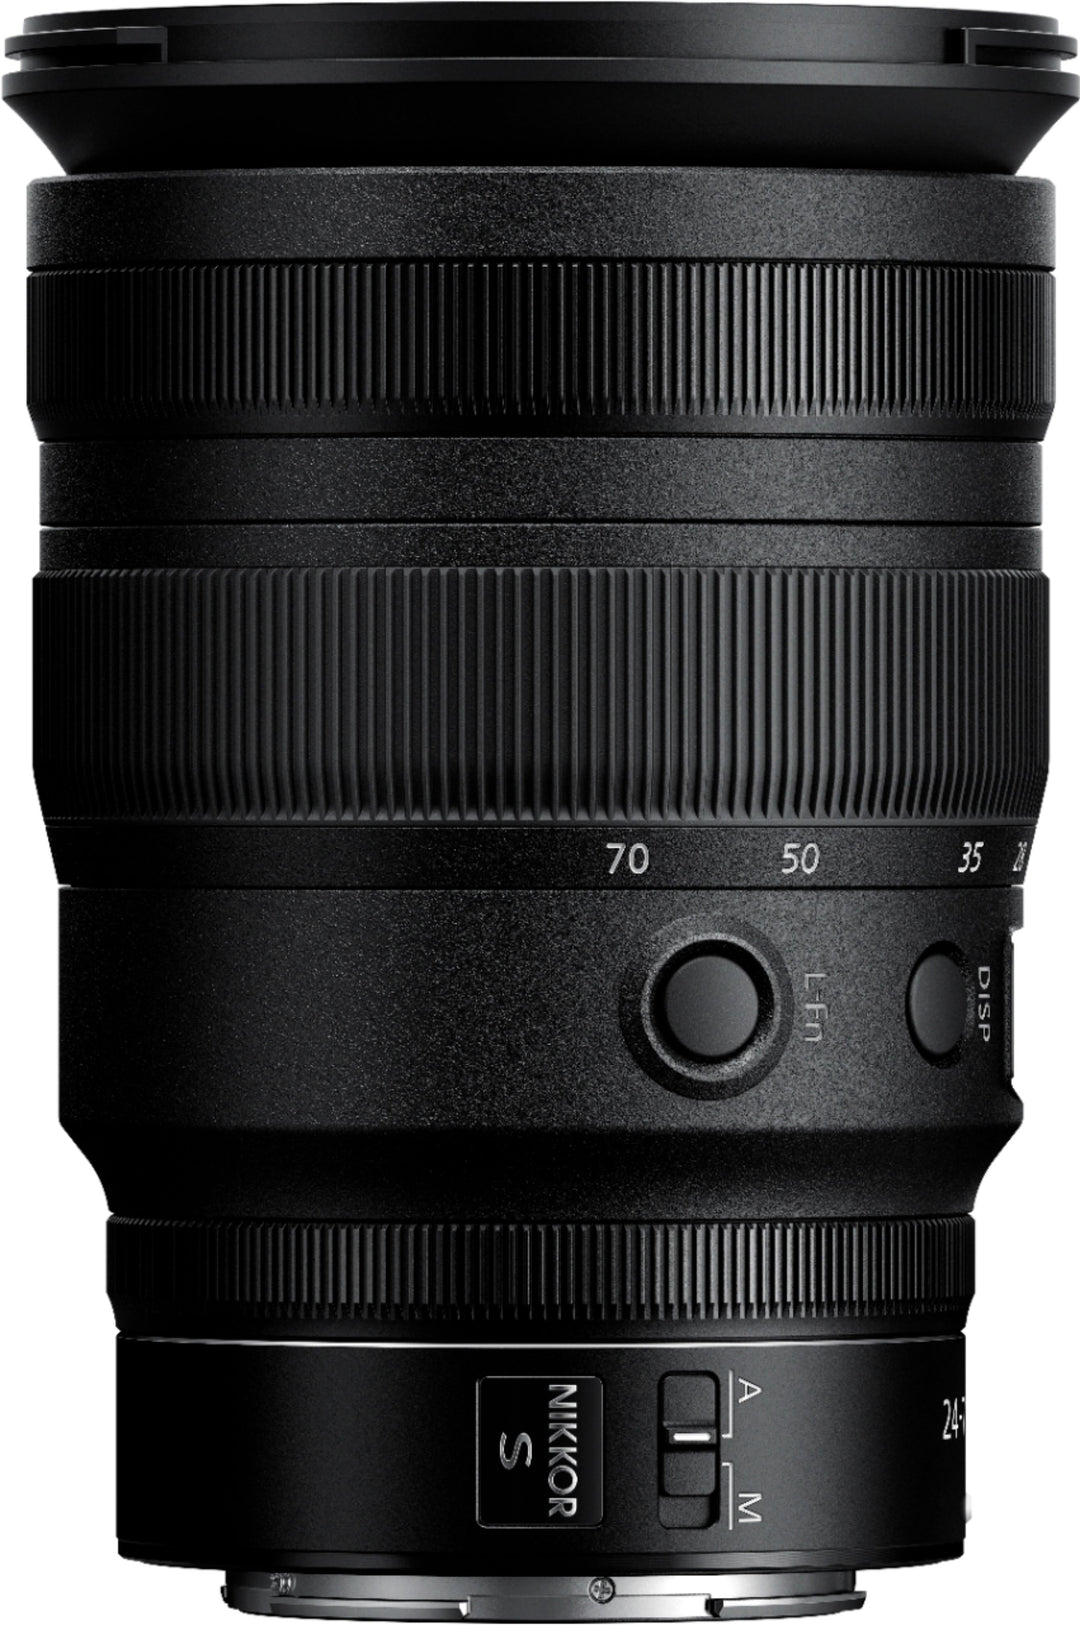 Nikkor Z 24-70mm f/2.8 S Optical Zoom Lens for Nikon Z - Black_4